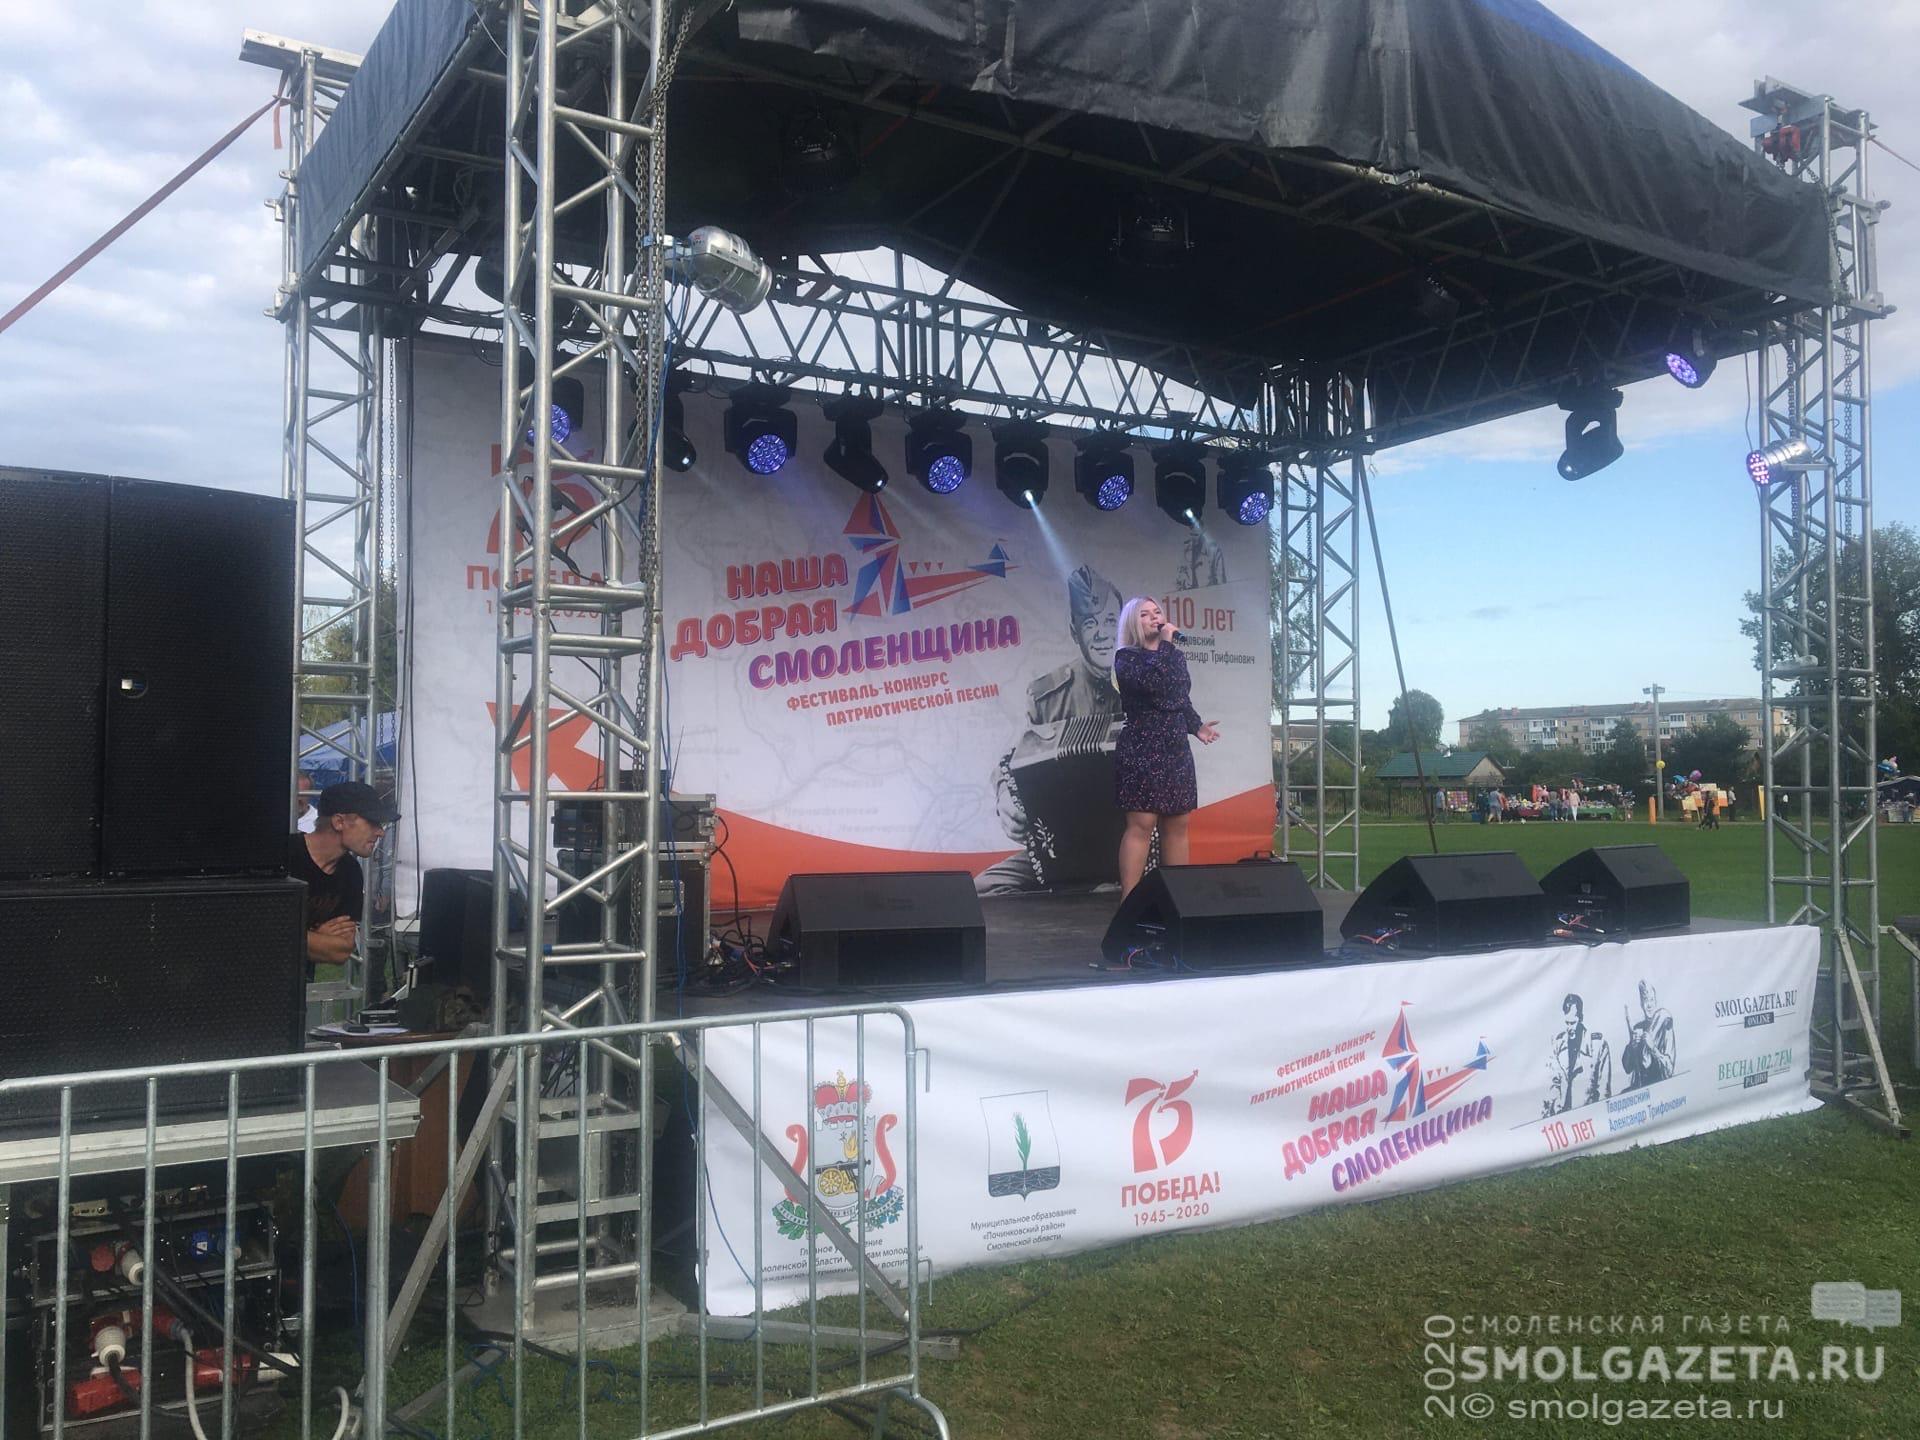 В Смоленской области стартовал фестиваль «Наша добрая Смоленщина»